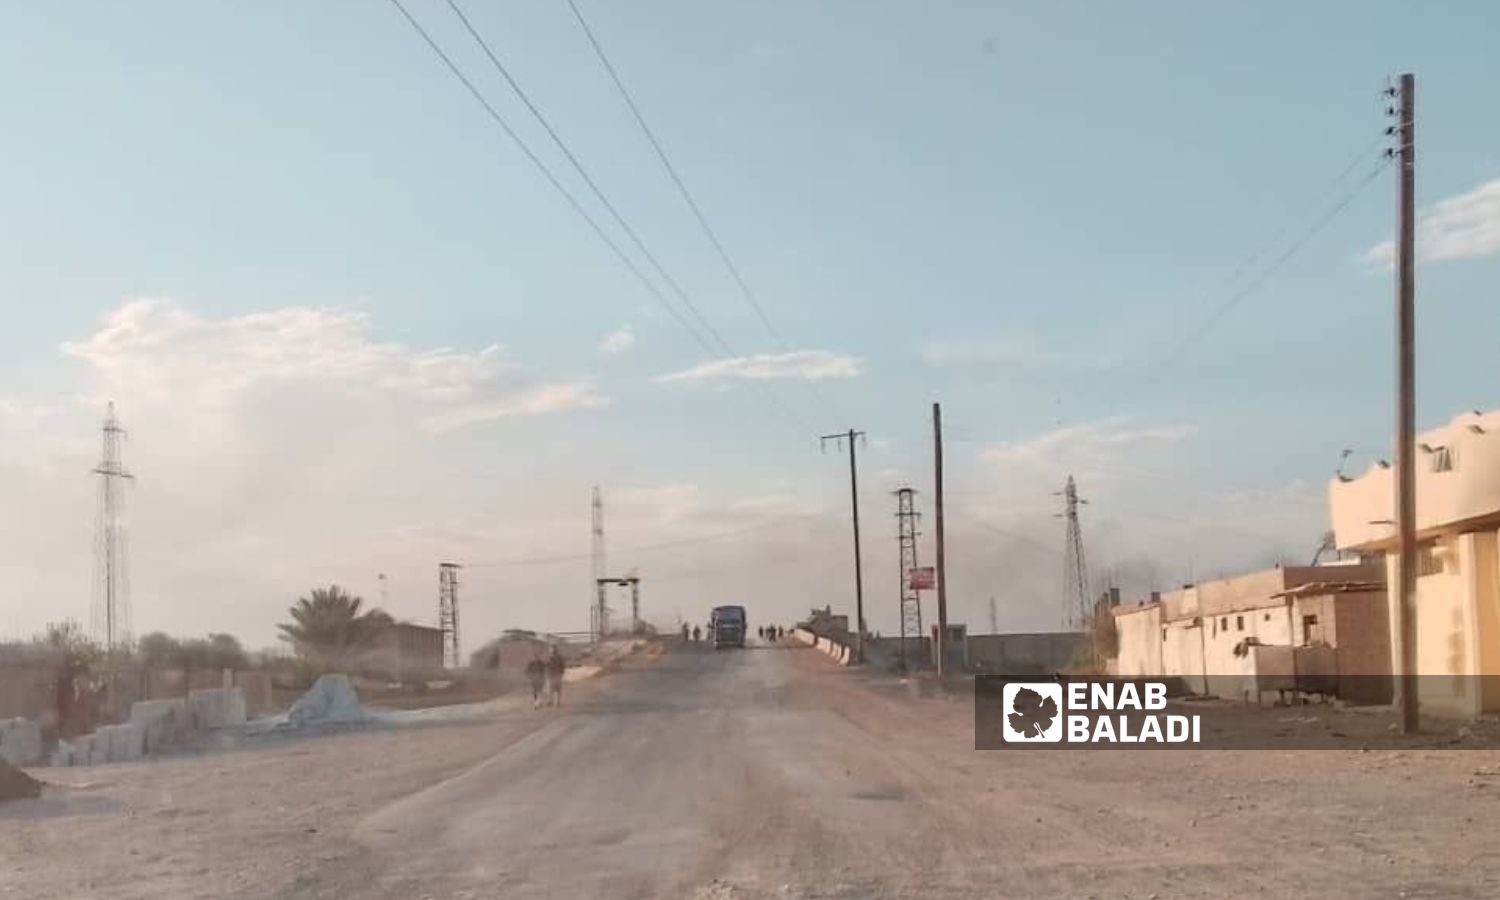 حاجز الجسر التابع لـ"قوات سوريا الديمقراطية" (قسد) في بلدة الصبحة بريف دير الزور الشرقي- 20 من أيلول 2023 (عنب بلدي)